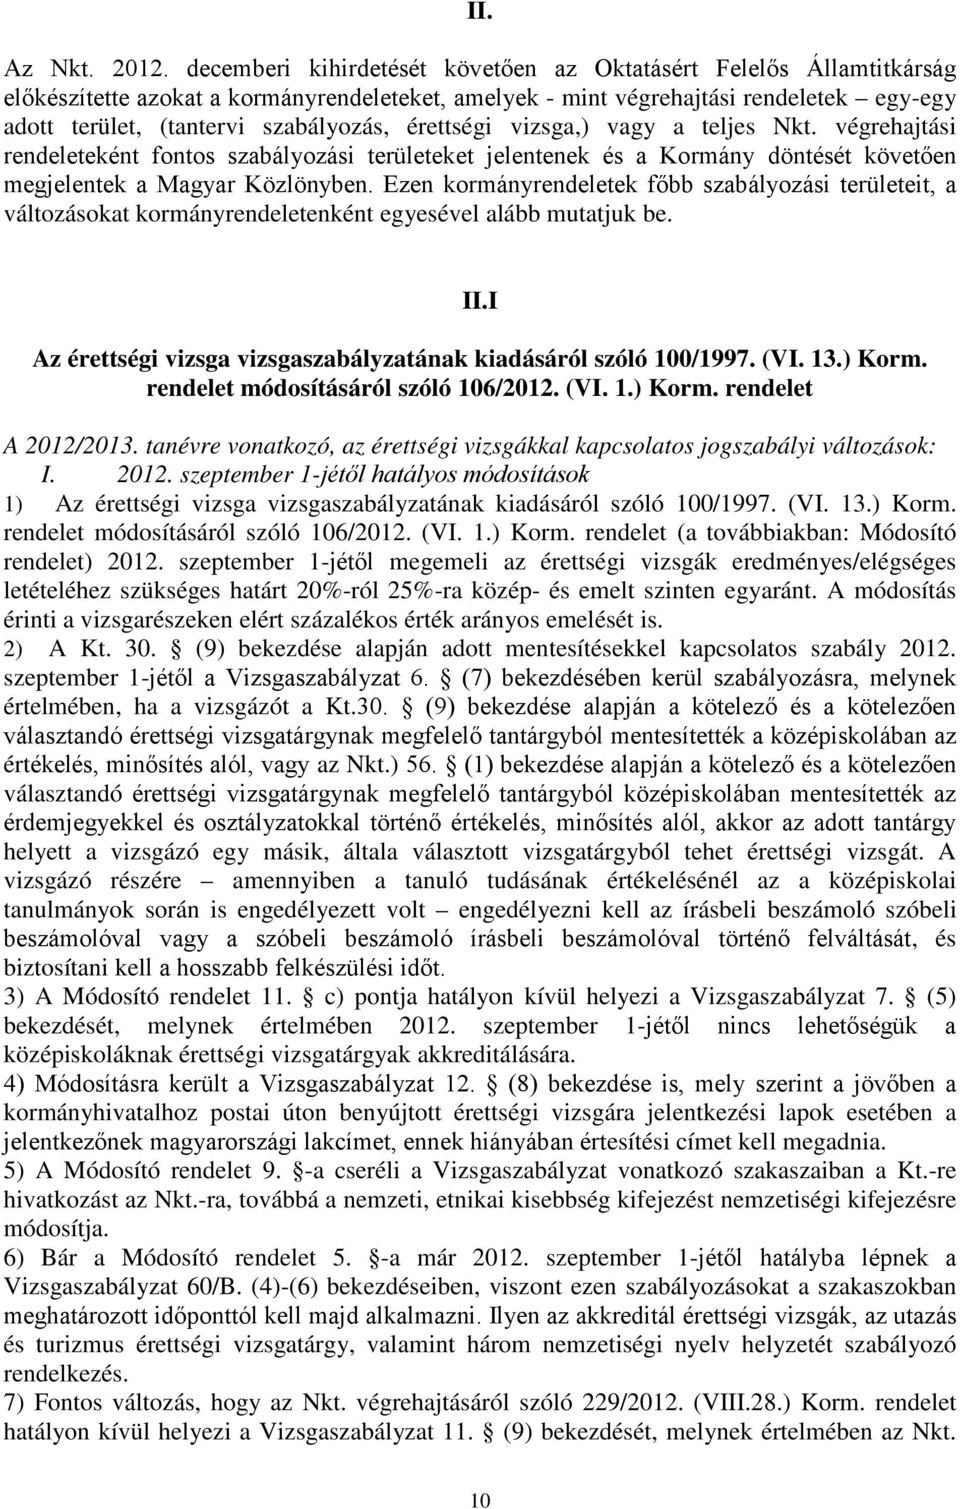 érettségi vizsga,) vagy a teljes Nkt. végrehajtási rendeleteként fontos szabályozási területeket jelentenek és a Kormány döntését követően megjelentek a Magyar Közlönyben.